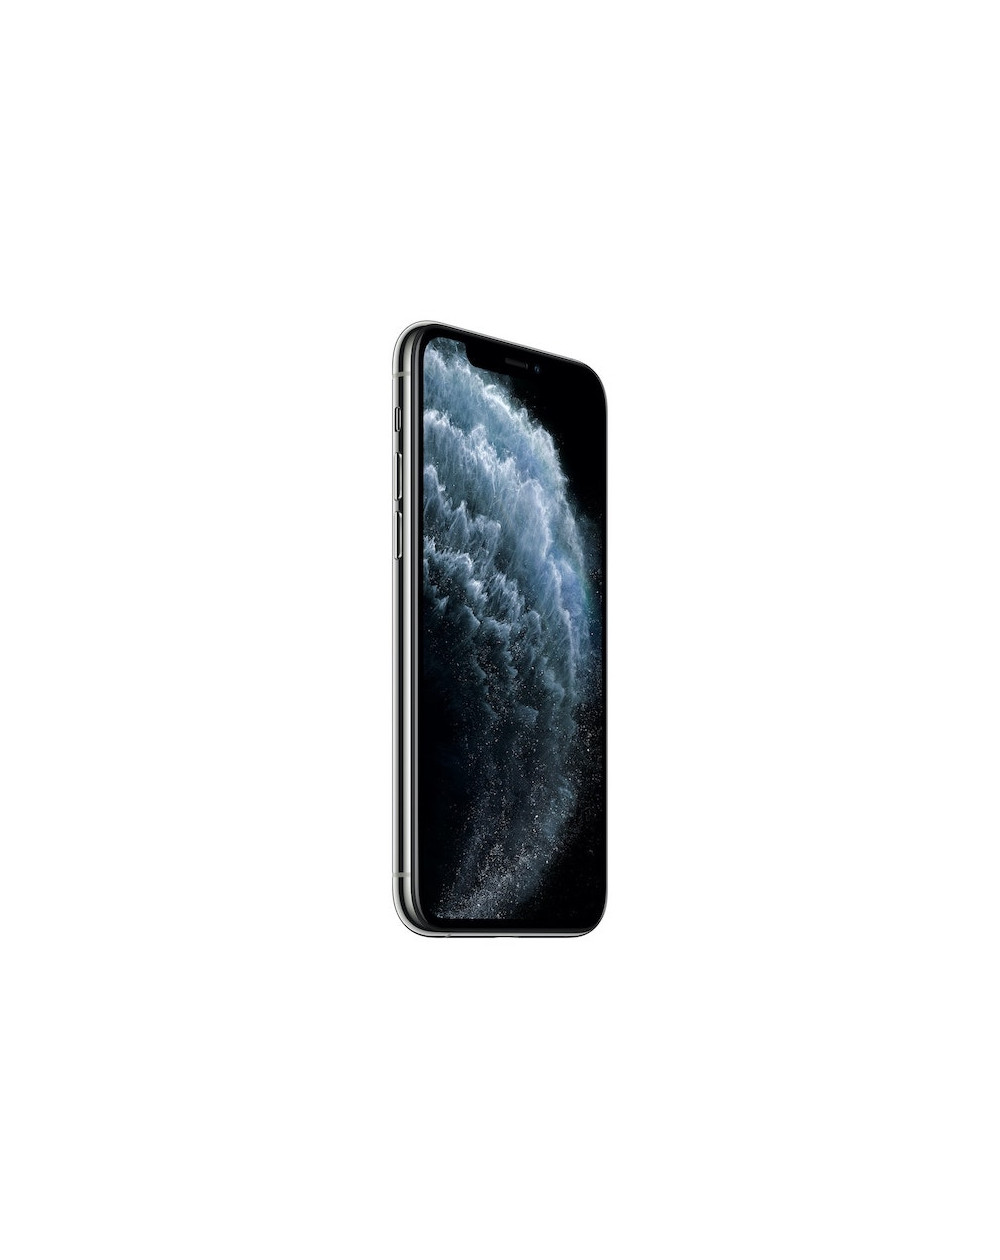 iPhone 11 Pro 256GB Silver - Prodotto rigenerato di grado A Plus